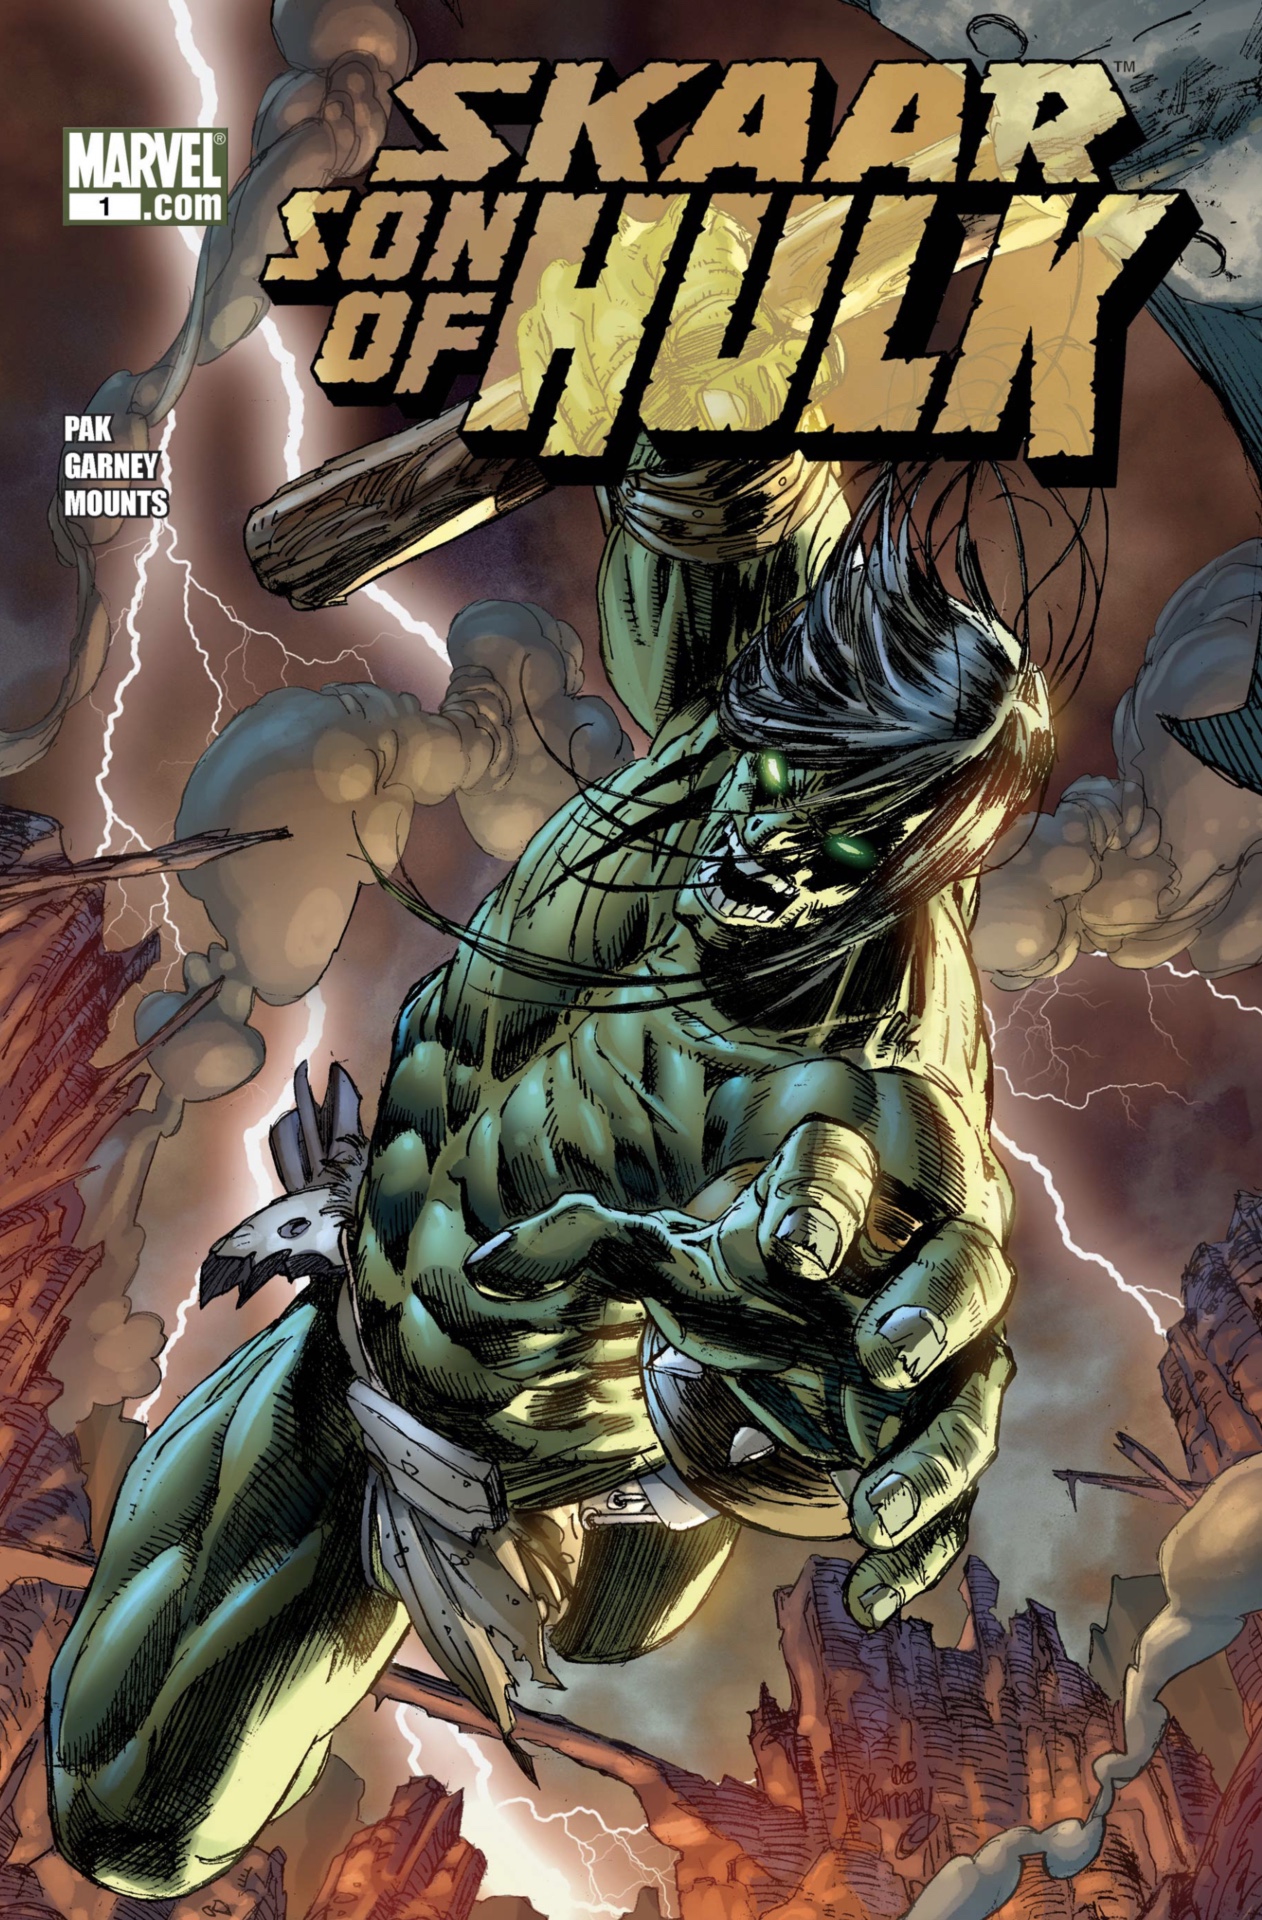 Skaar, Sohn des Hulk in den Marvel-Comics